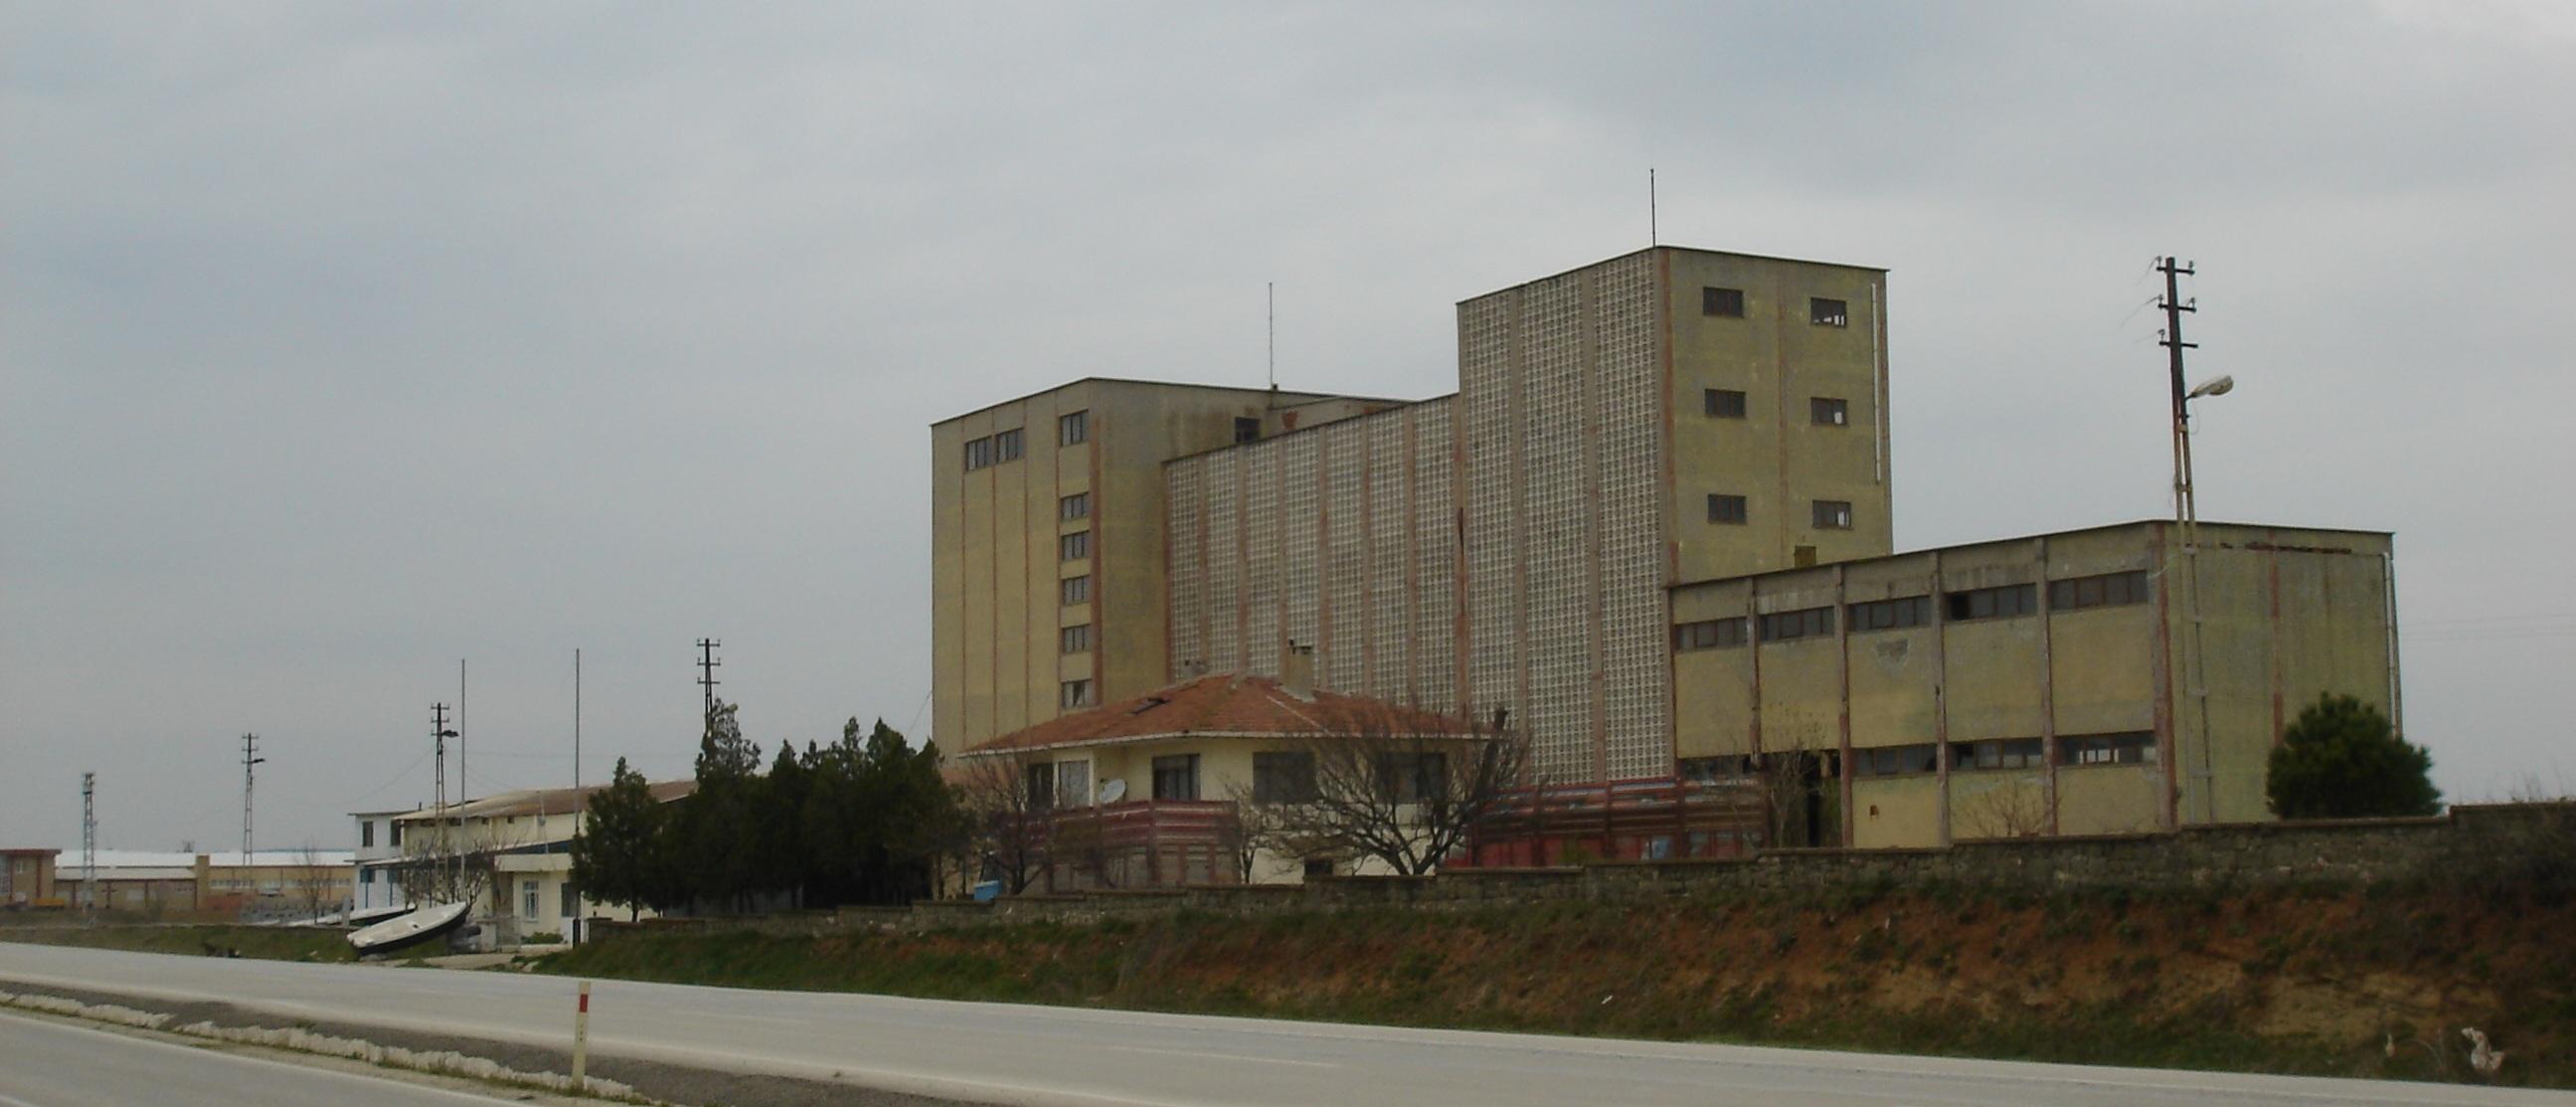 keşan un fabrikası